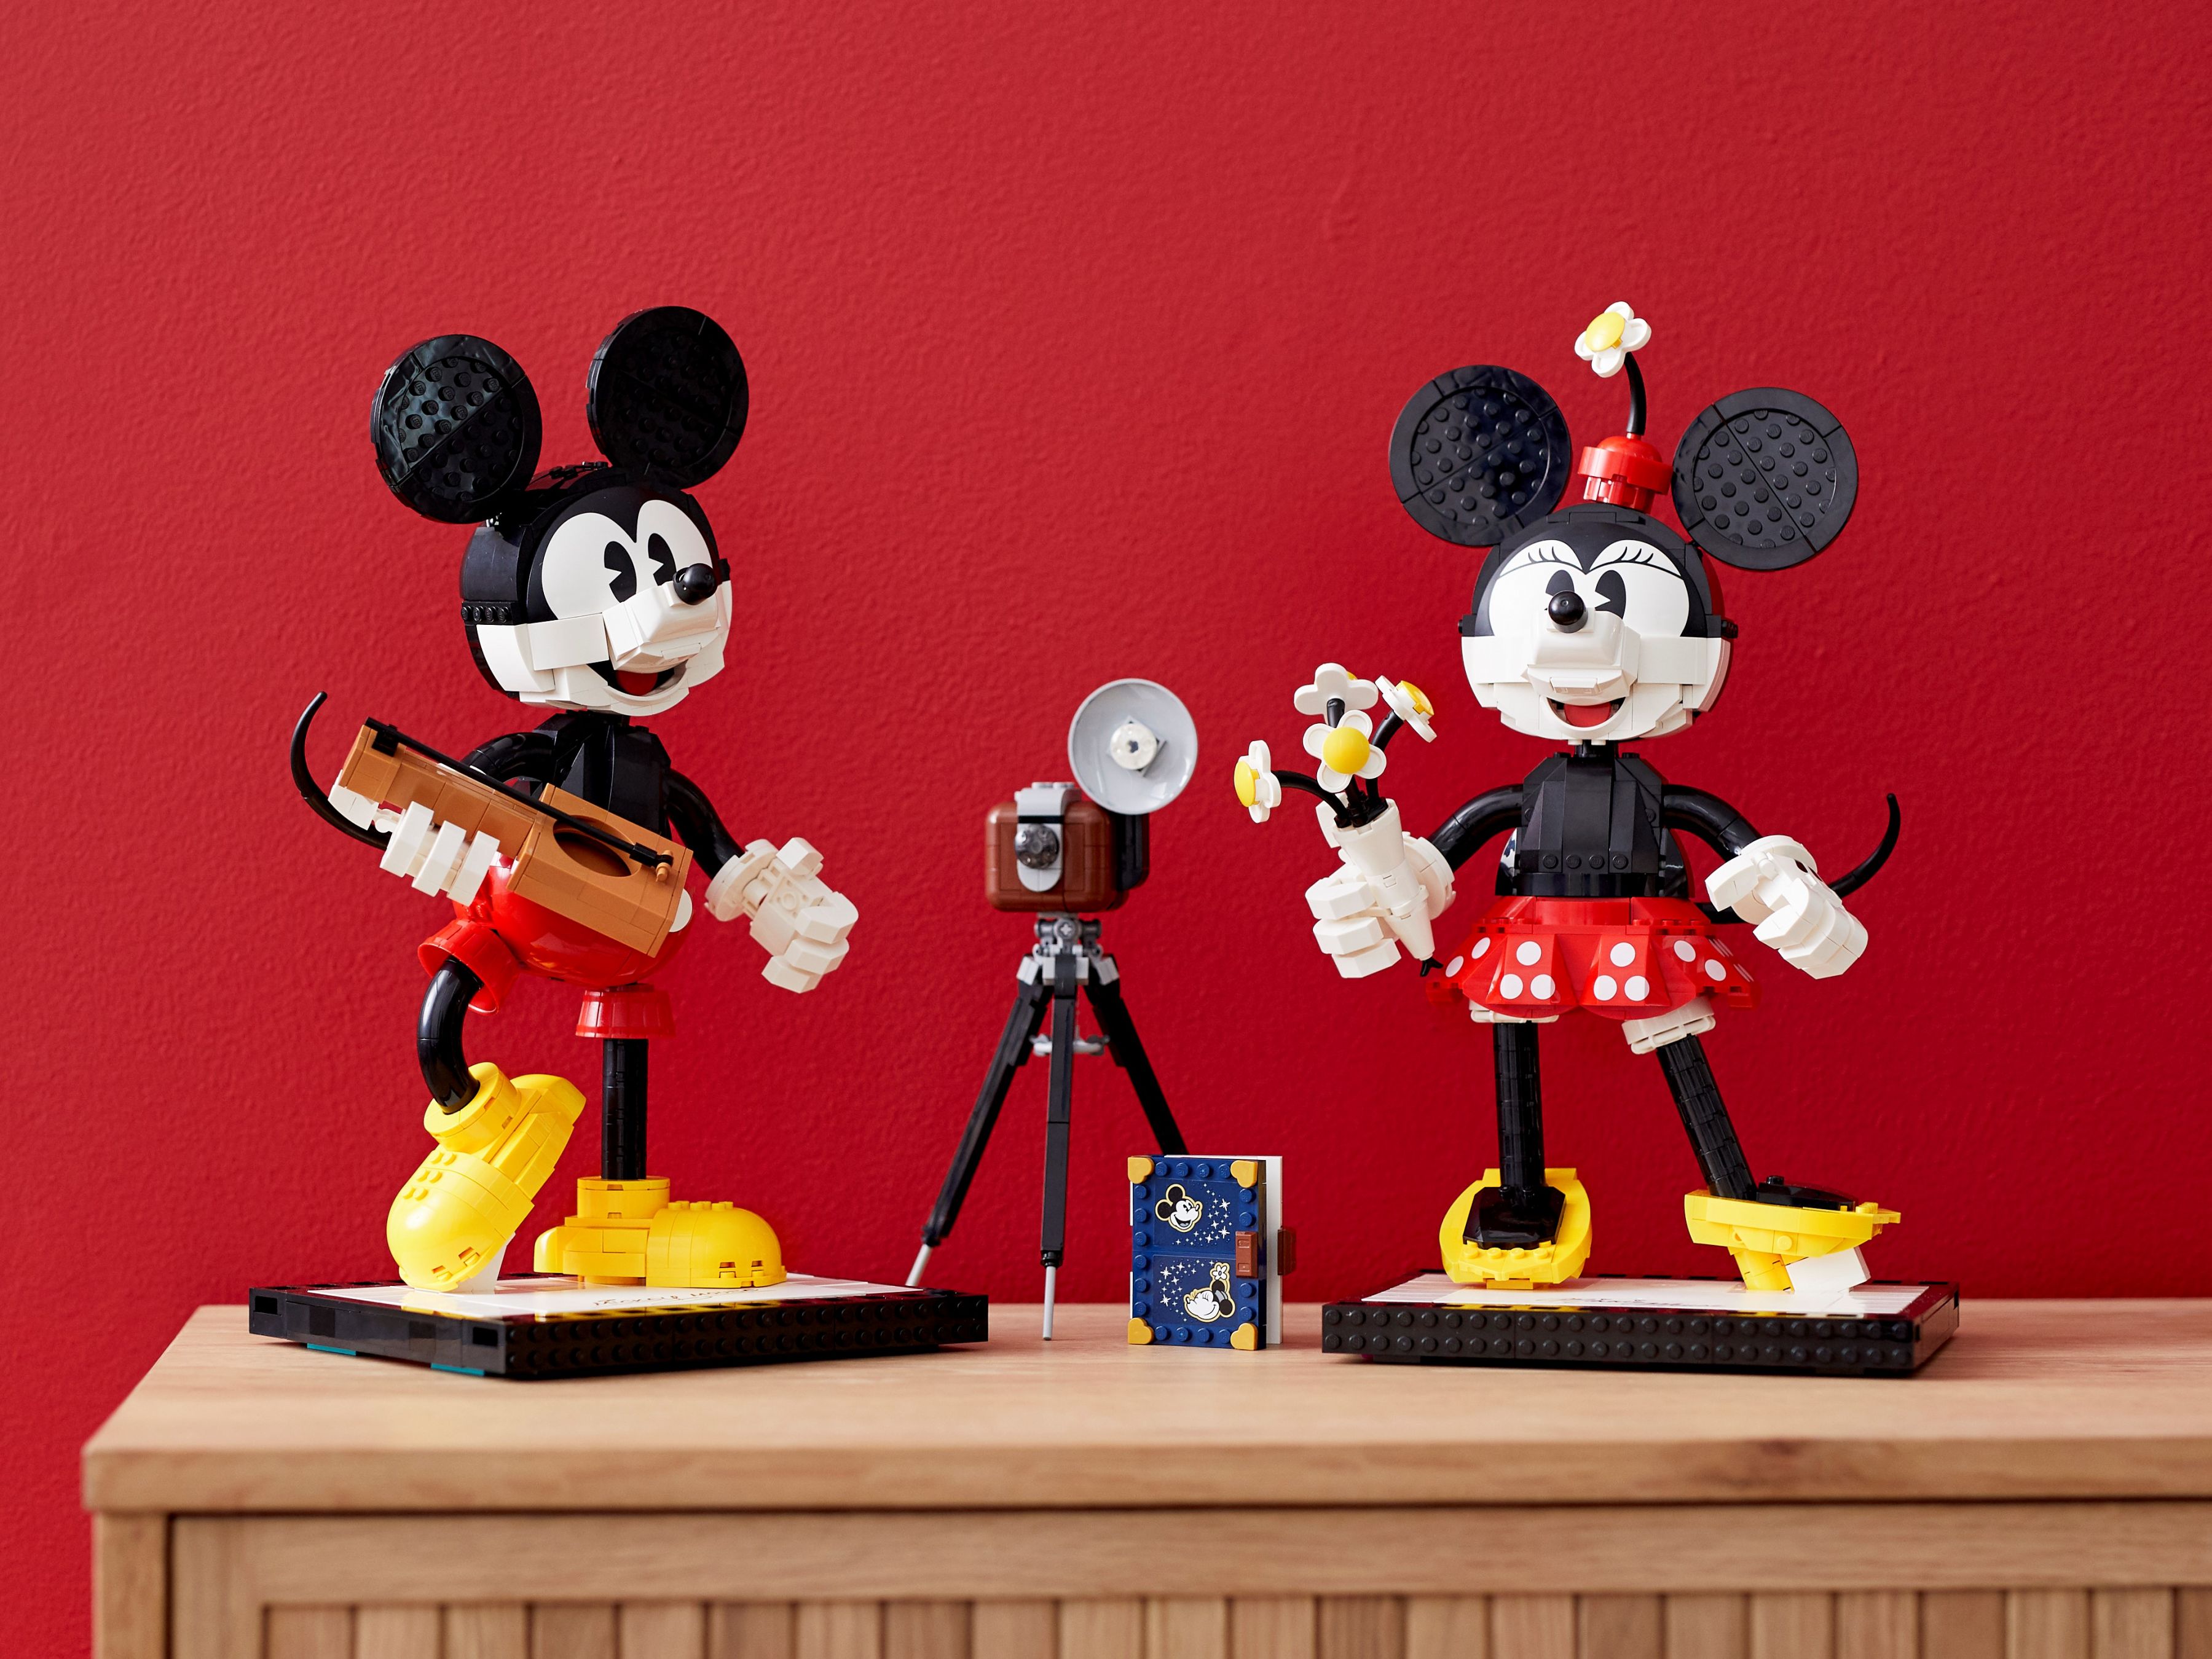 LEGO Disney 43179 Micky Maus und Minnie Maus LEGO_43179_alt23.jpg